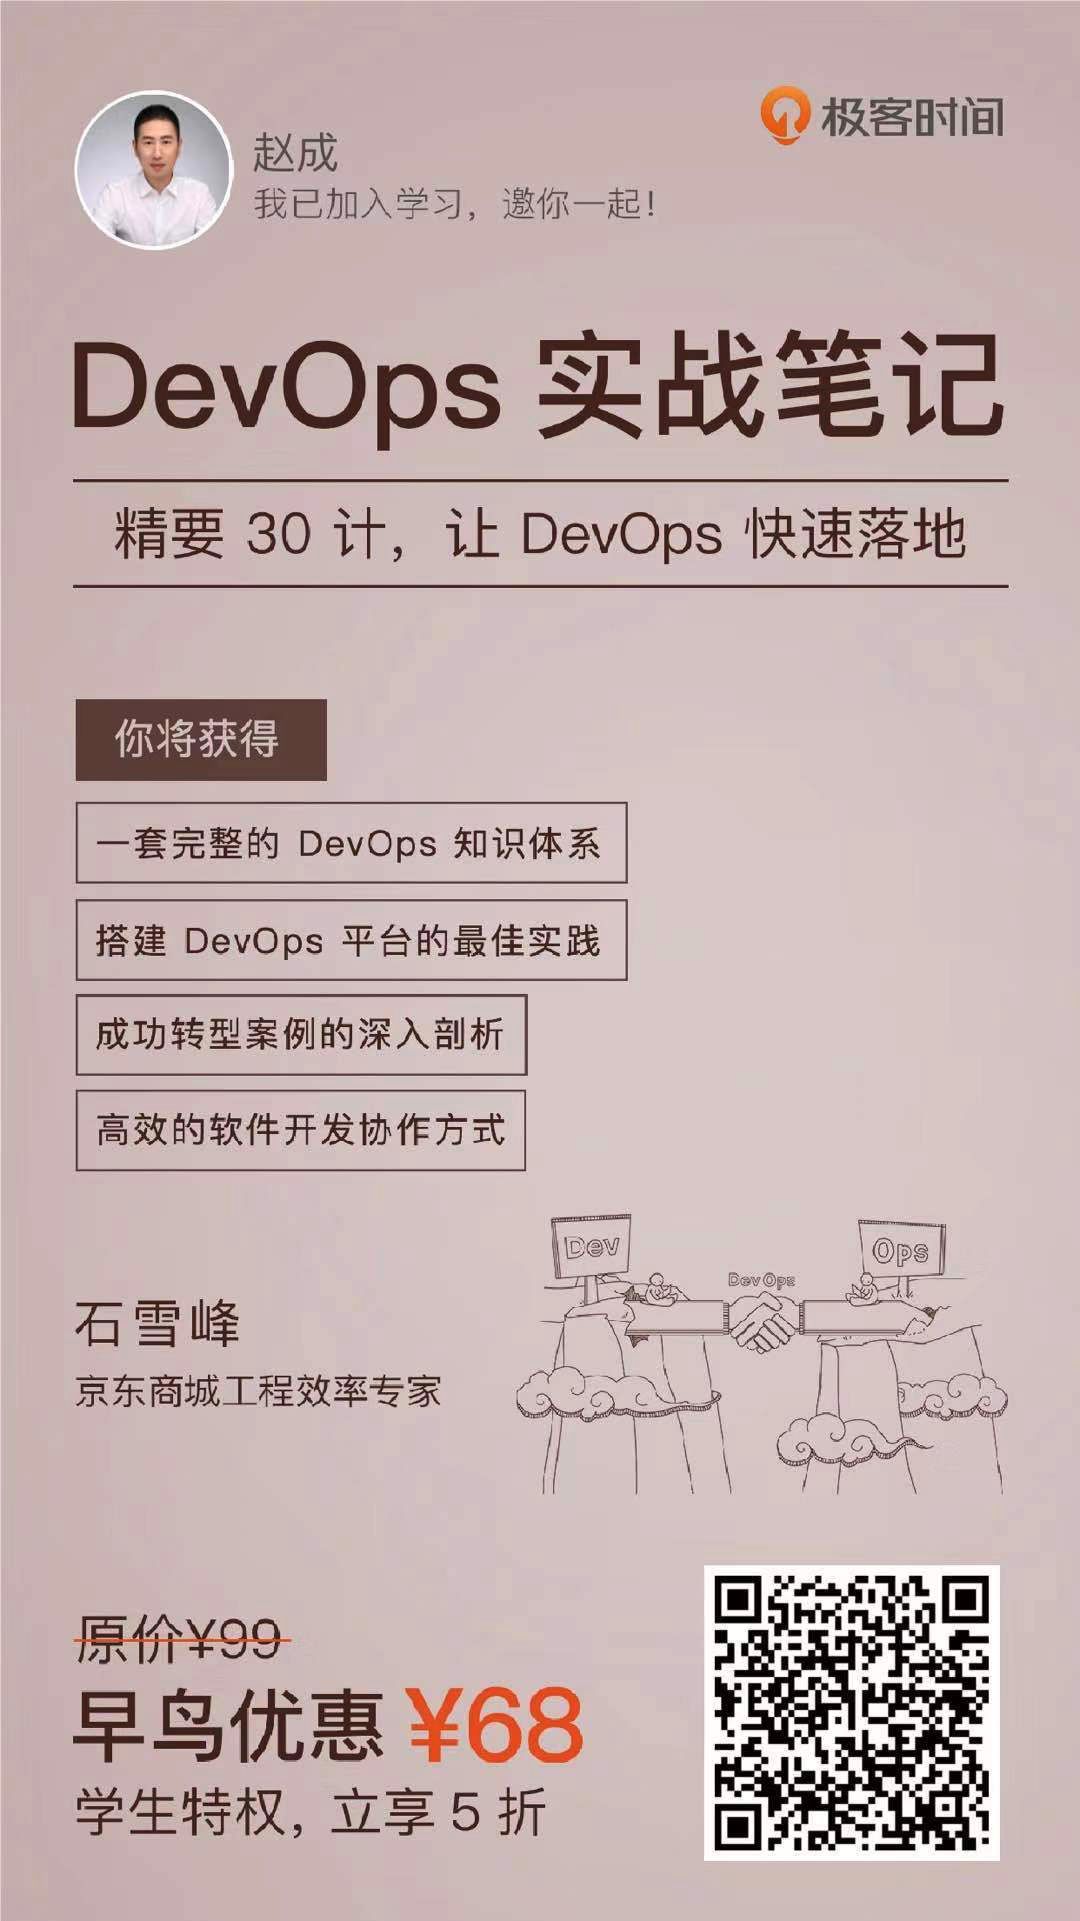 DevOps 转型到底难不难？ 